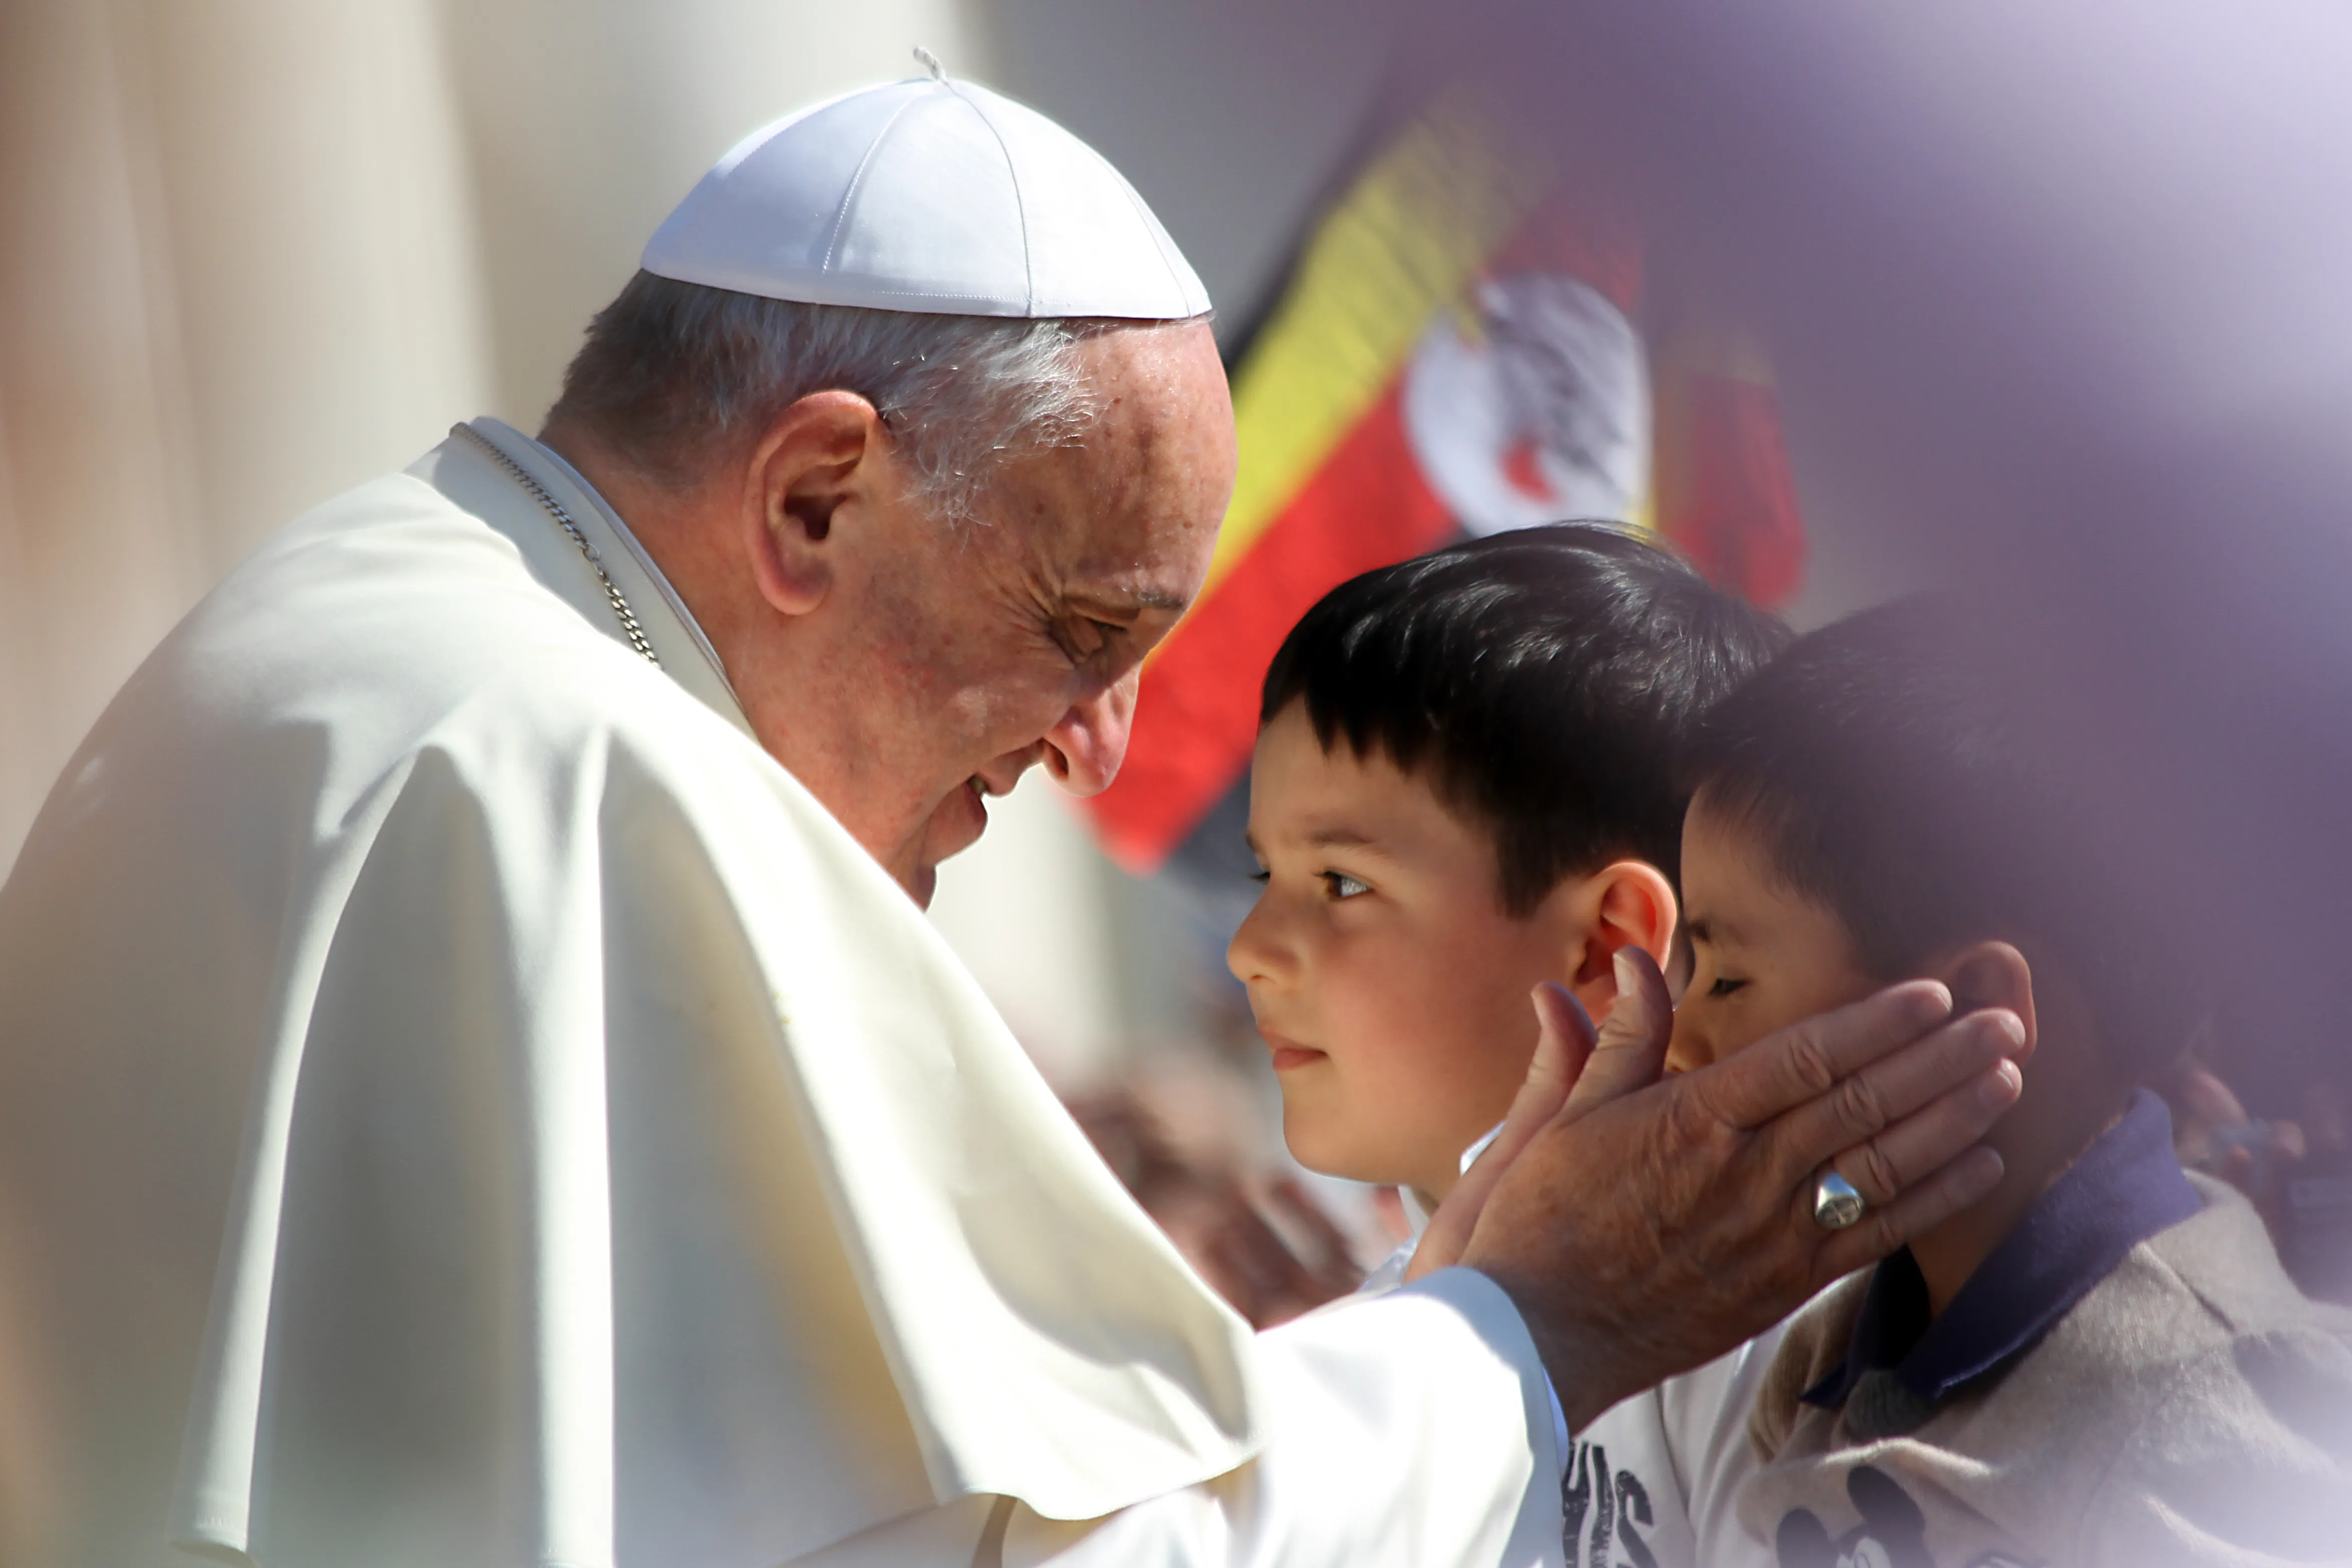 El Papa Francisco durante la audiencia general del miércoles el 30 de abril de 2014 en Ciudad del Vaticano.?w=200&h=150